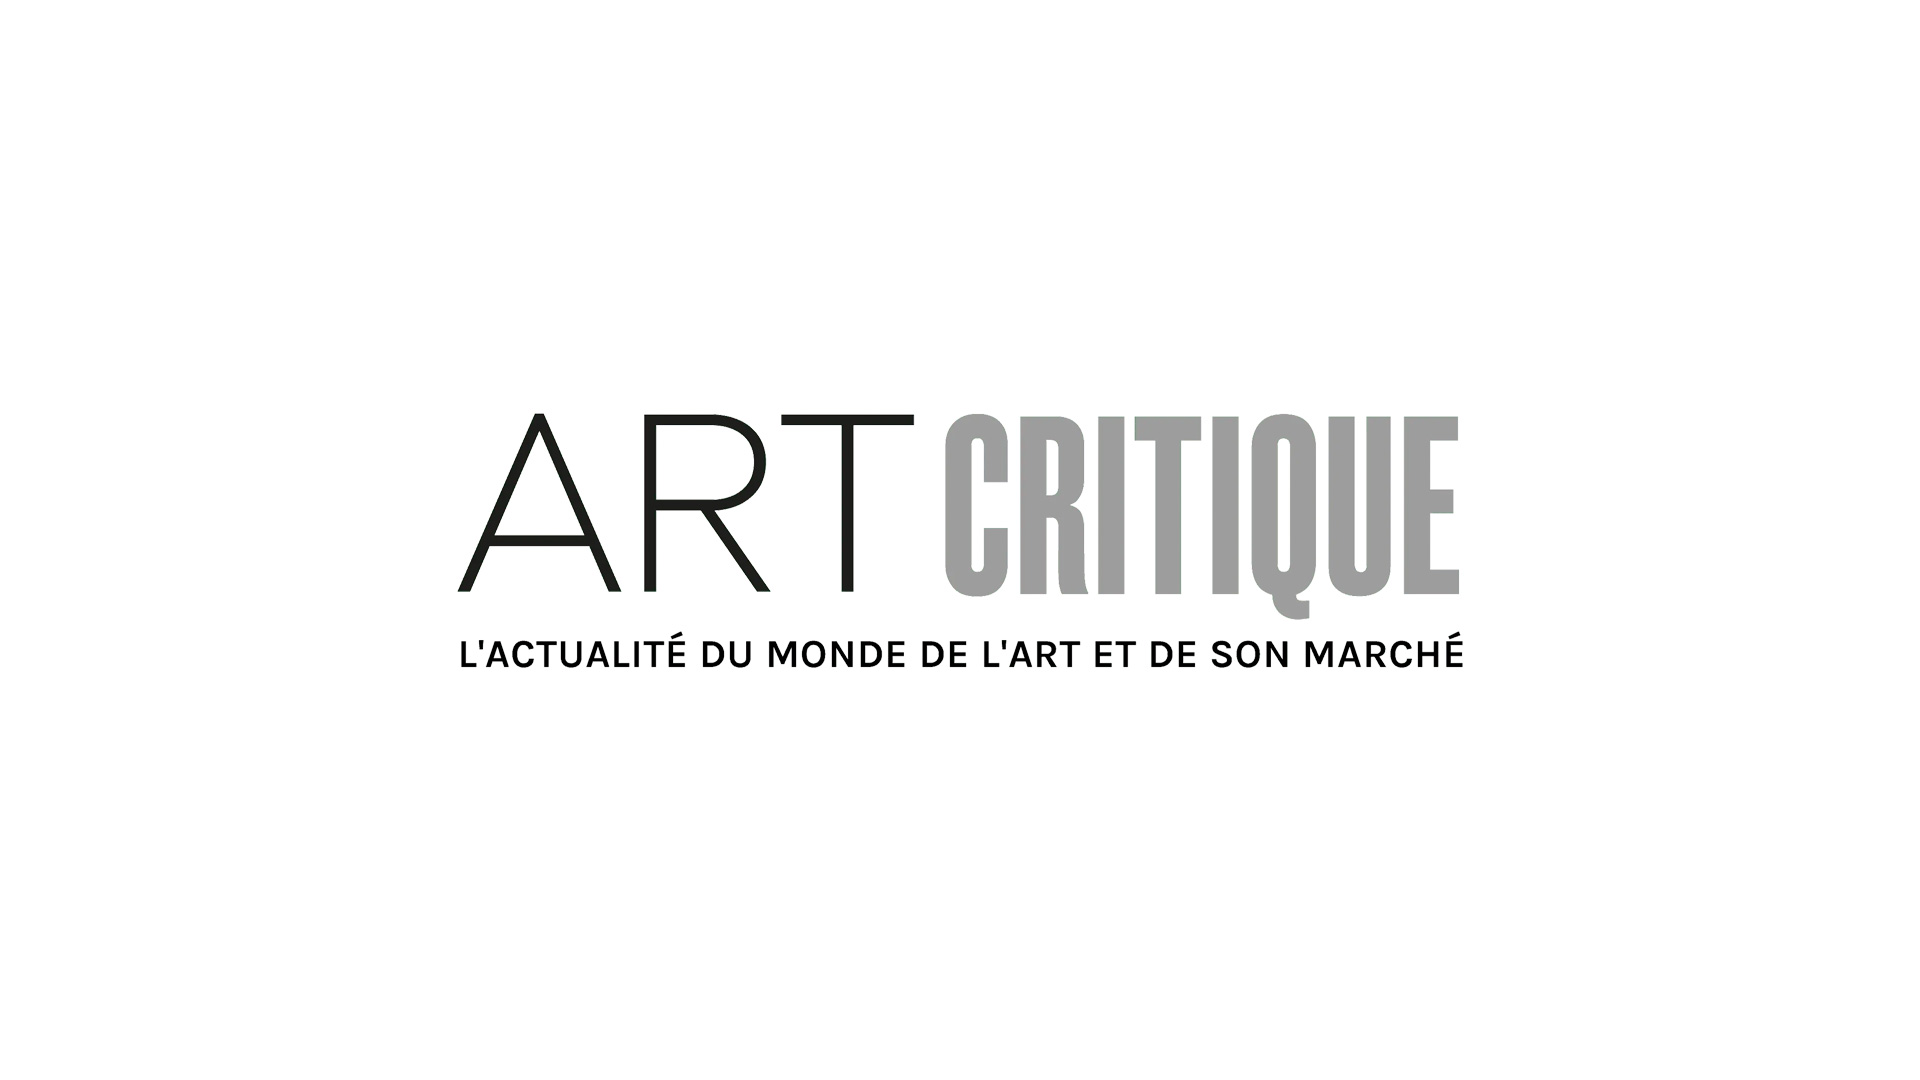 Finalists for the 2019 Prix du dessin, Fondation d’art contemporain Daniel and Florence Guerlain